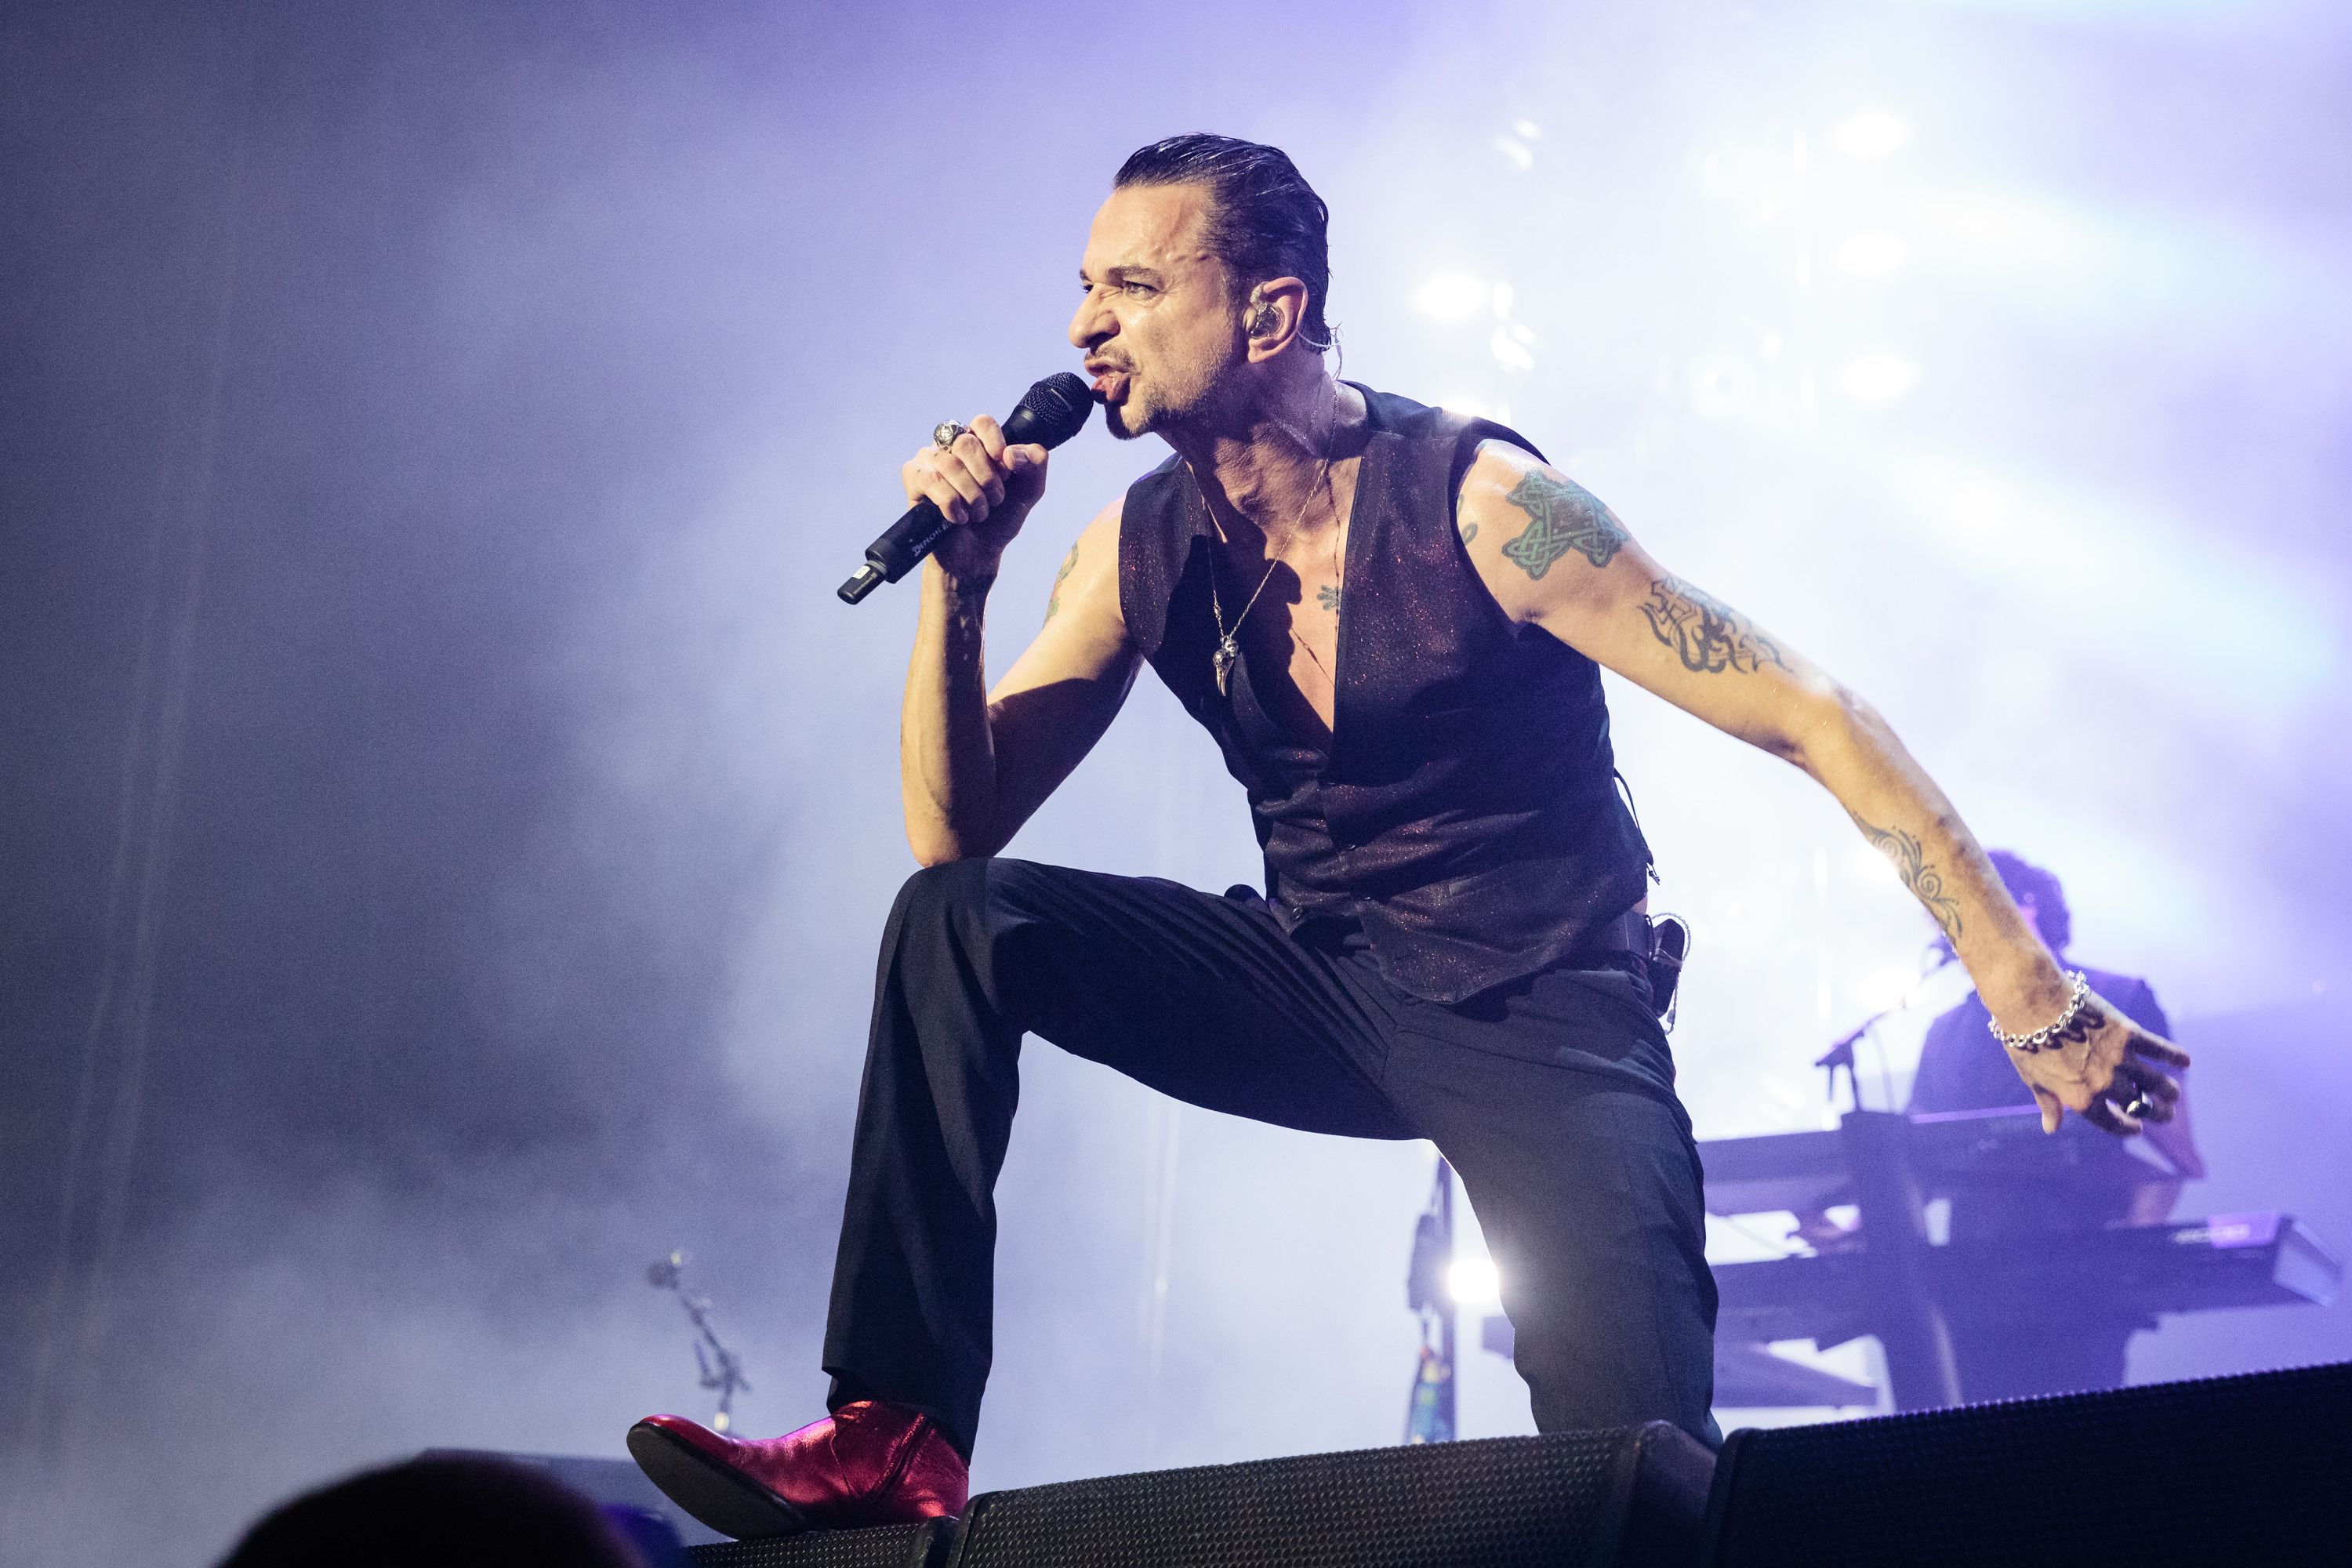 Dave Gahan of Depeche Mode in concert in 2018